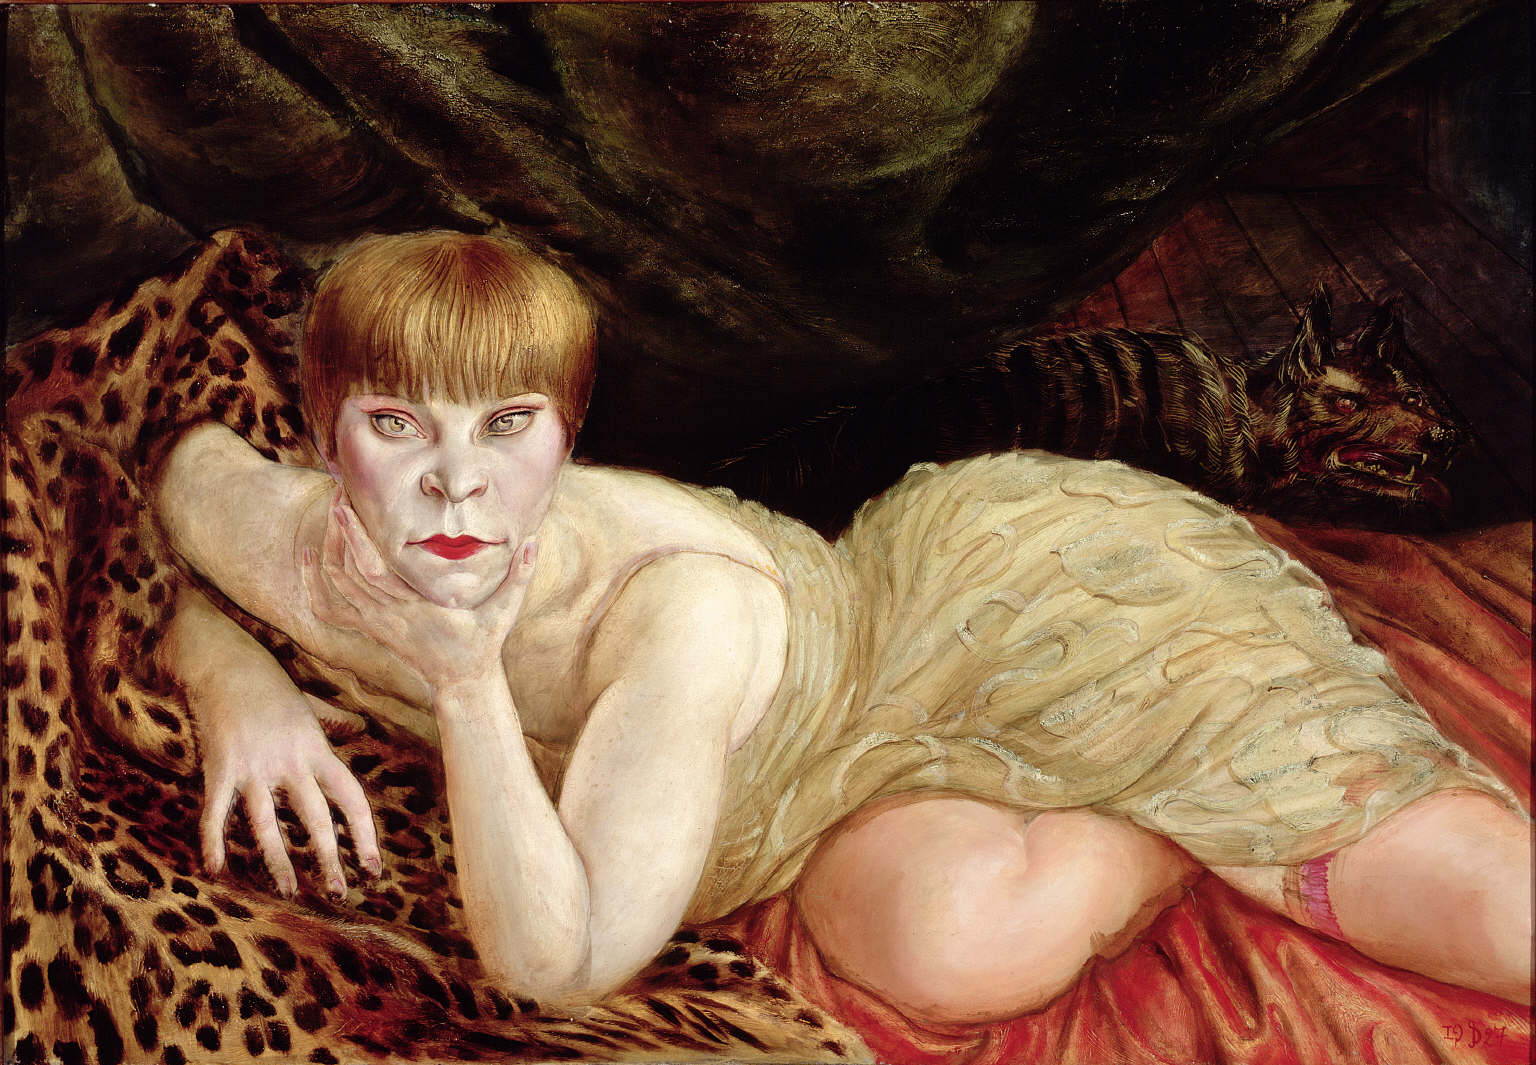 在豹皮上斜倚的女人 by 奥托 迪克斯 - 1902 - 68 x 98 cm  赫伯特·F·约翰逊艺术博物馆